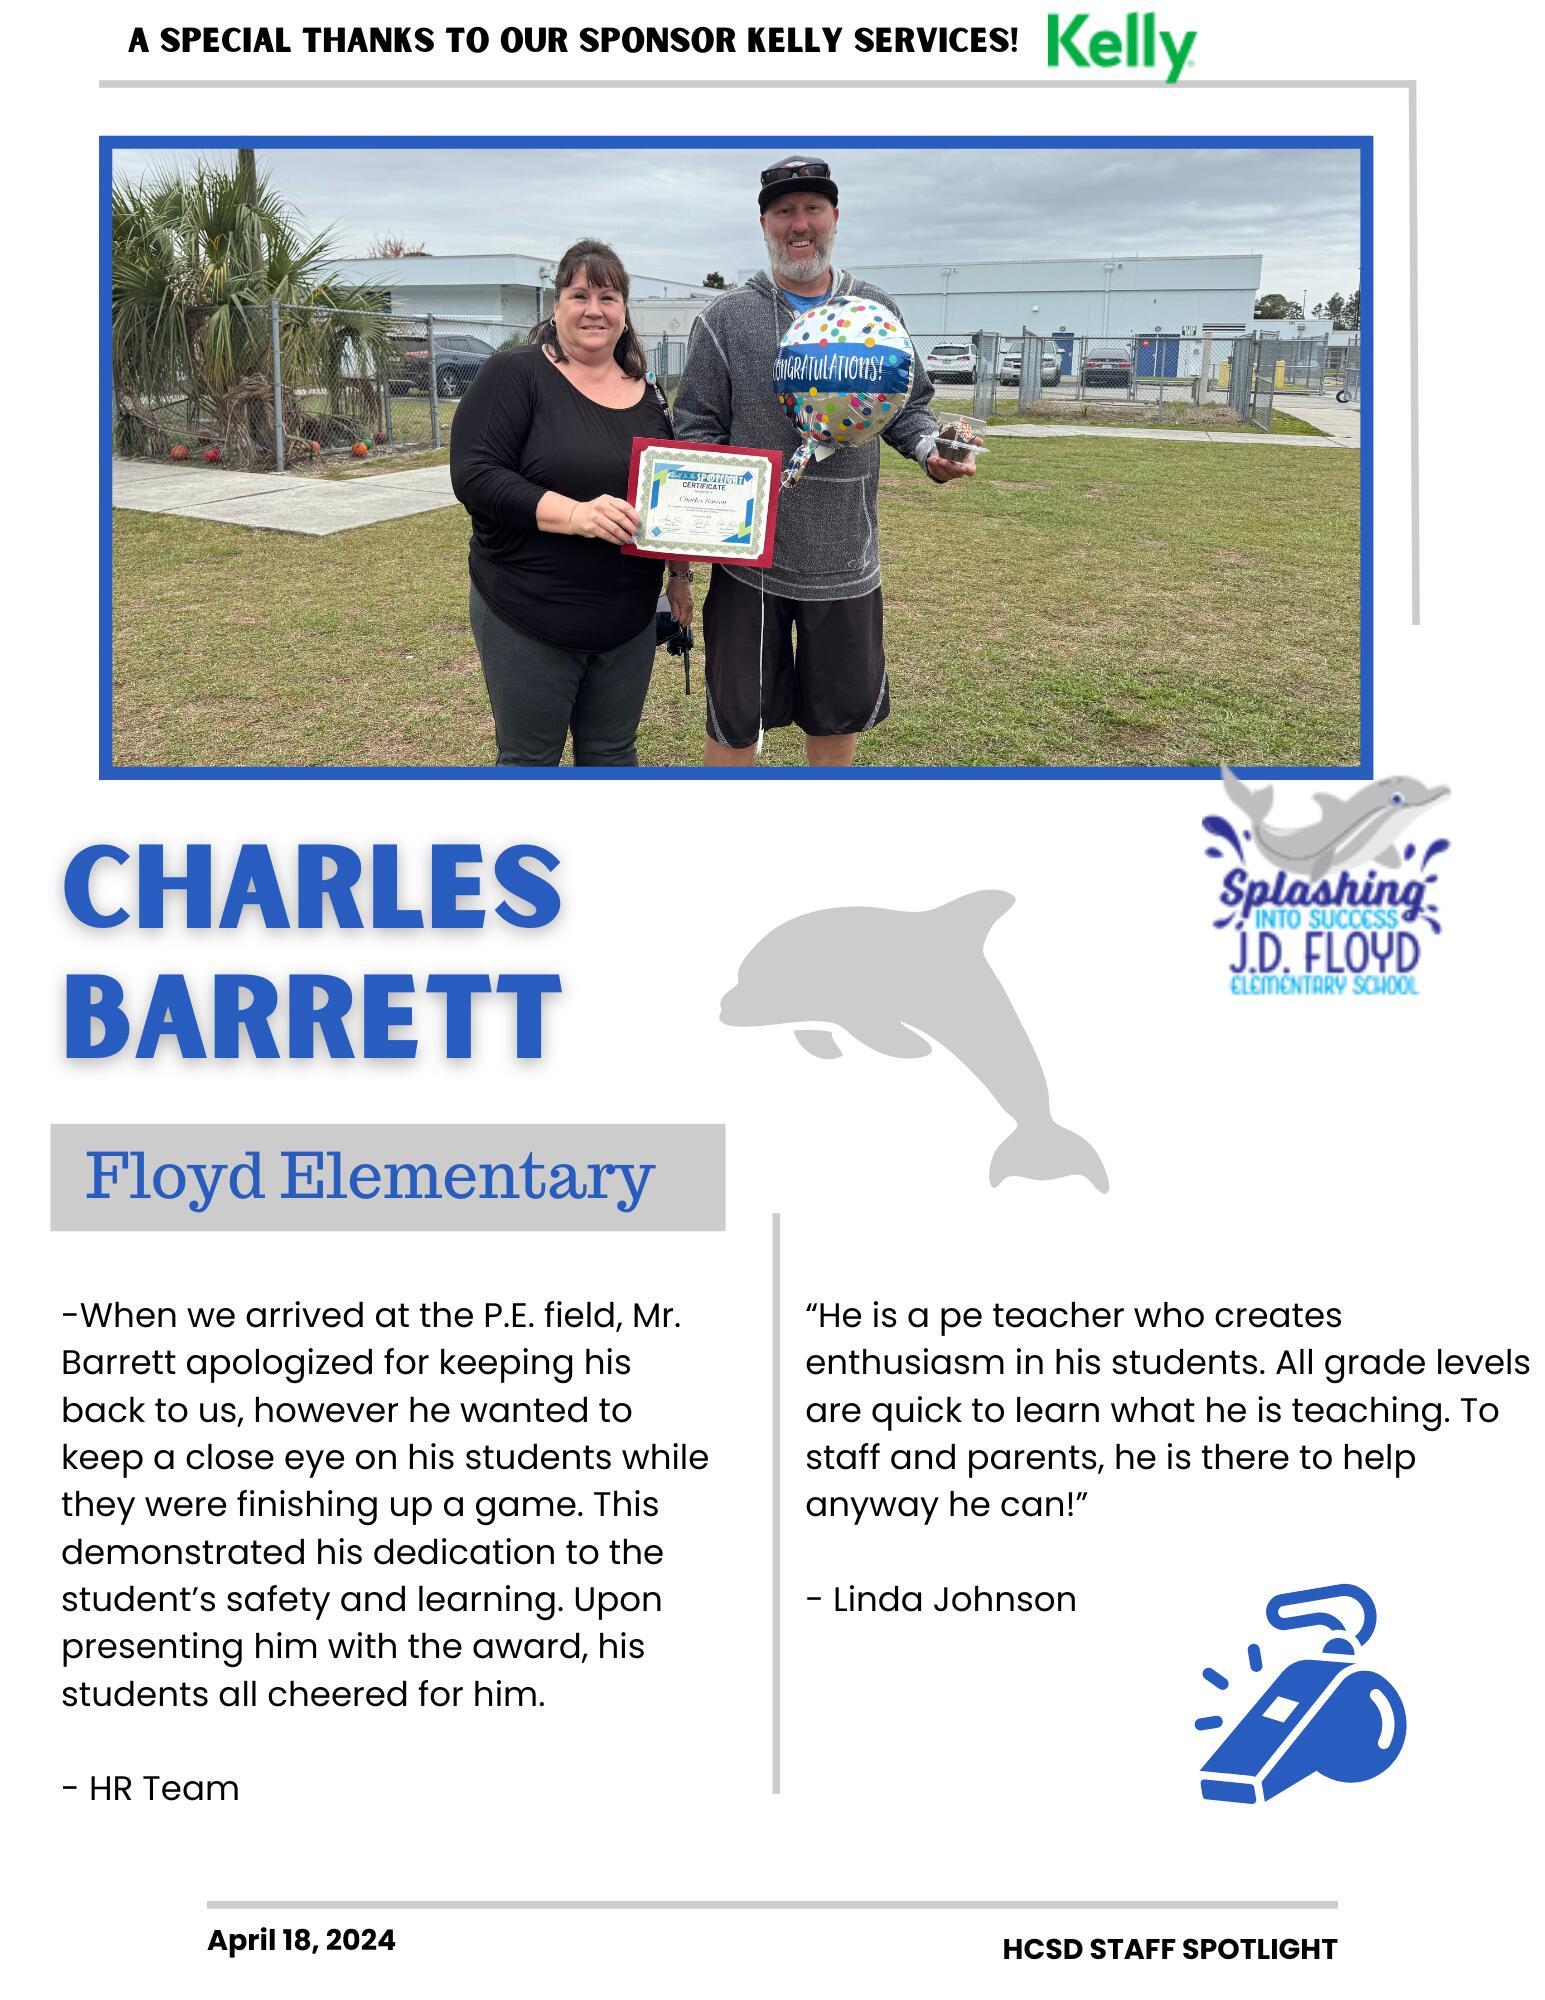 Staff Spotlight on Charles Barrett